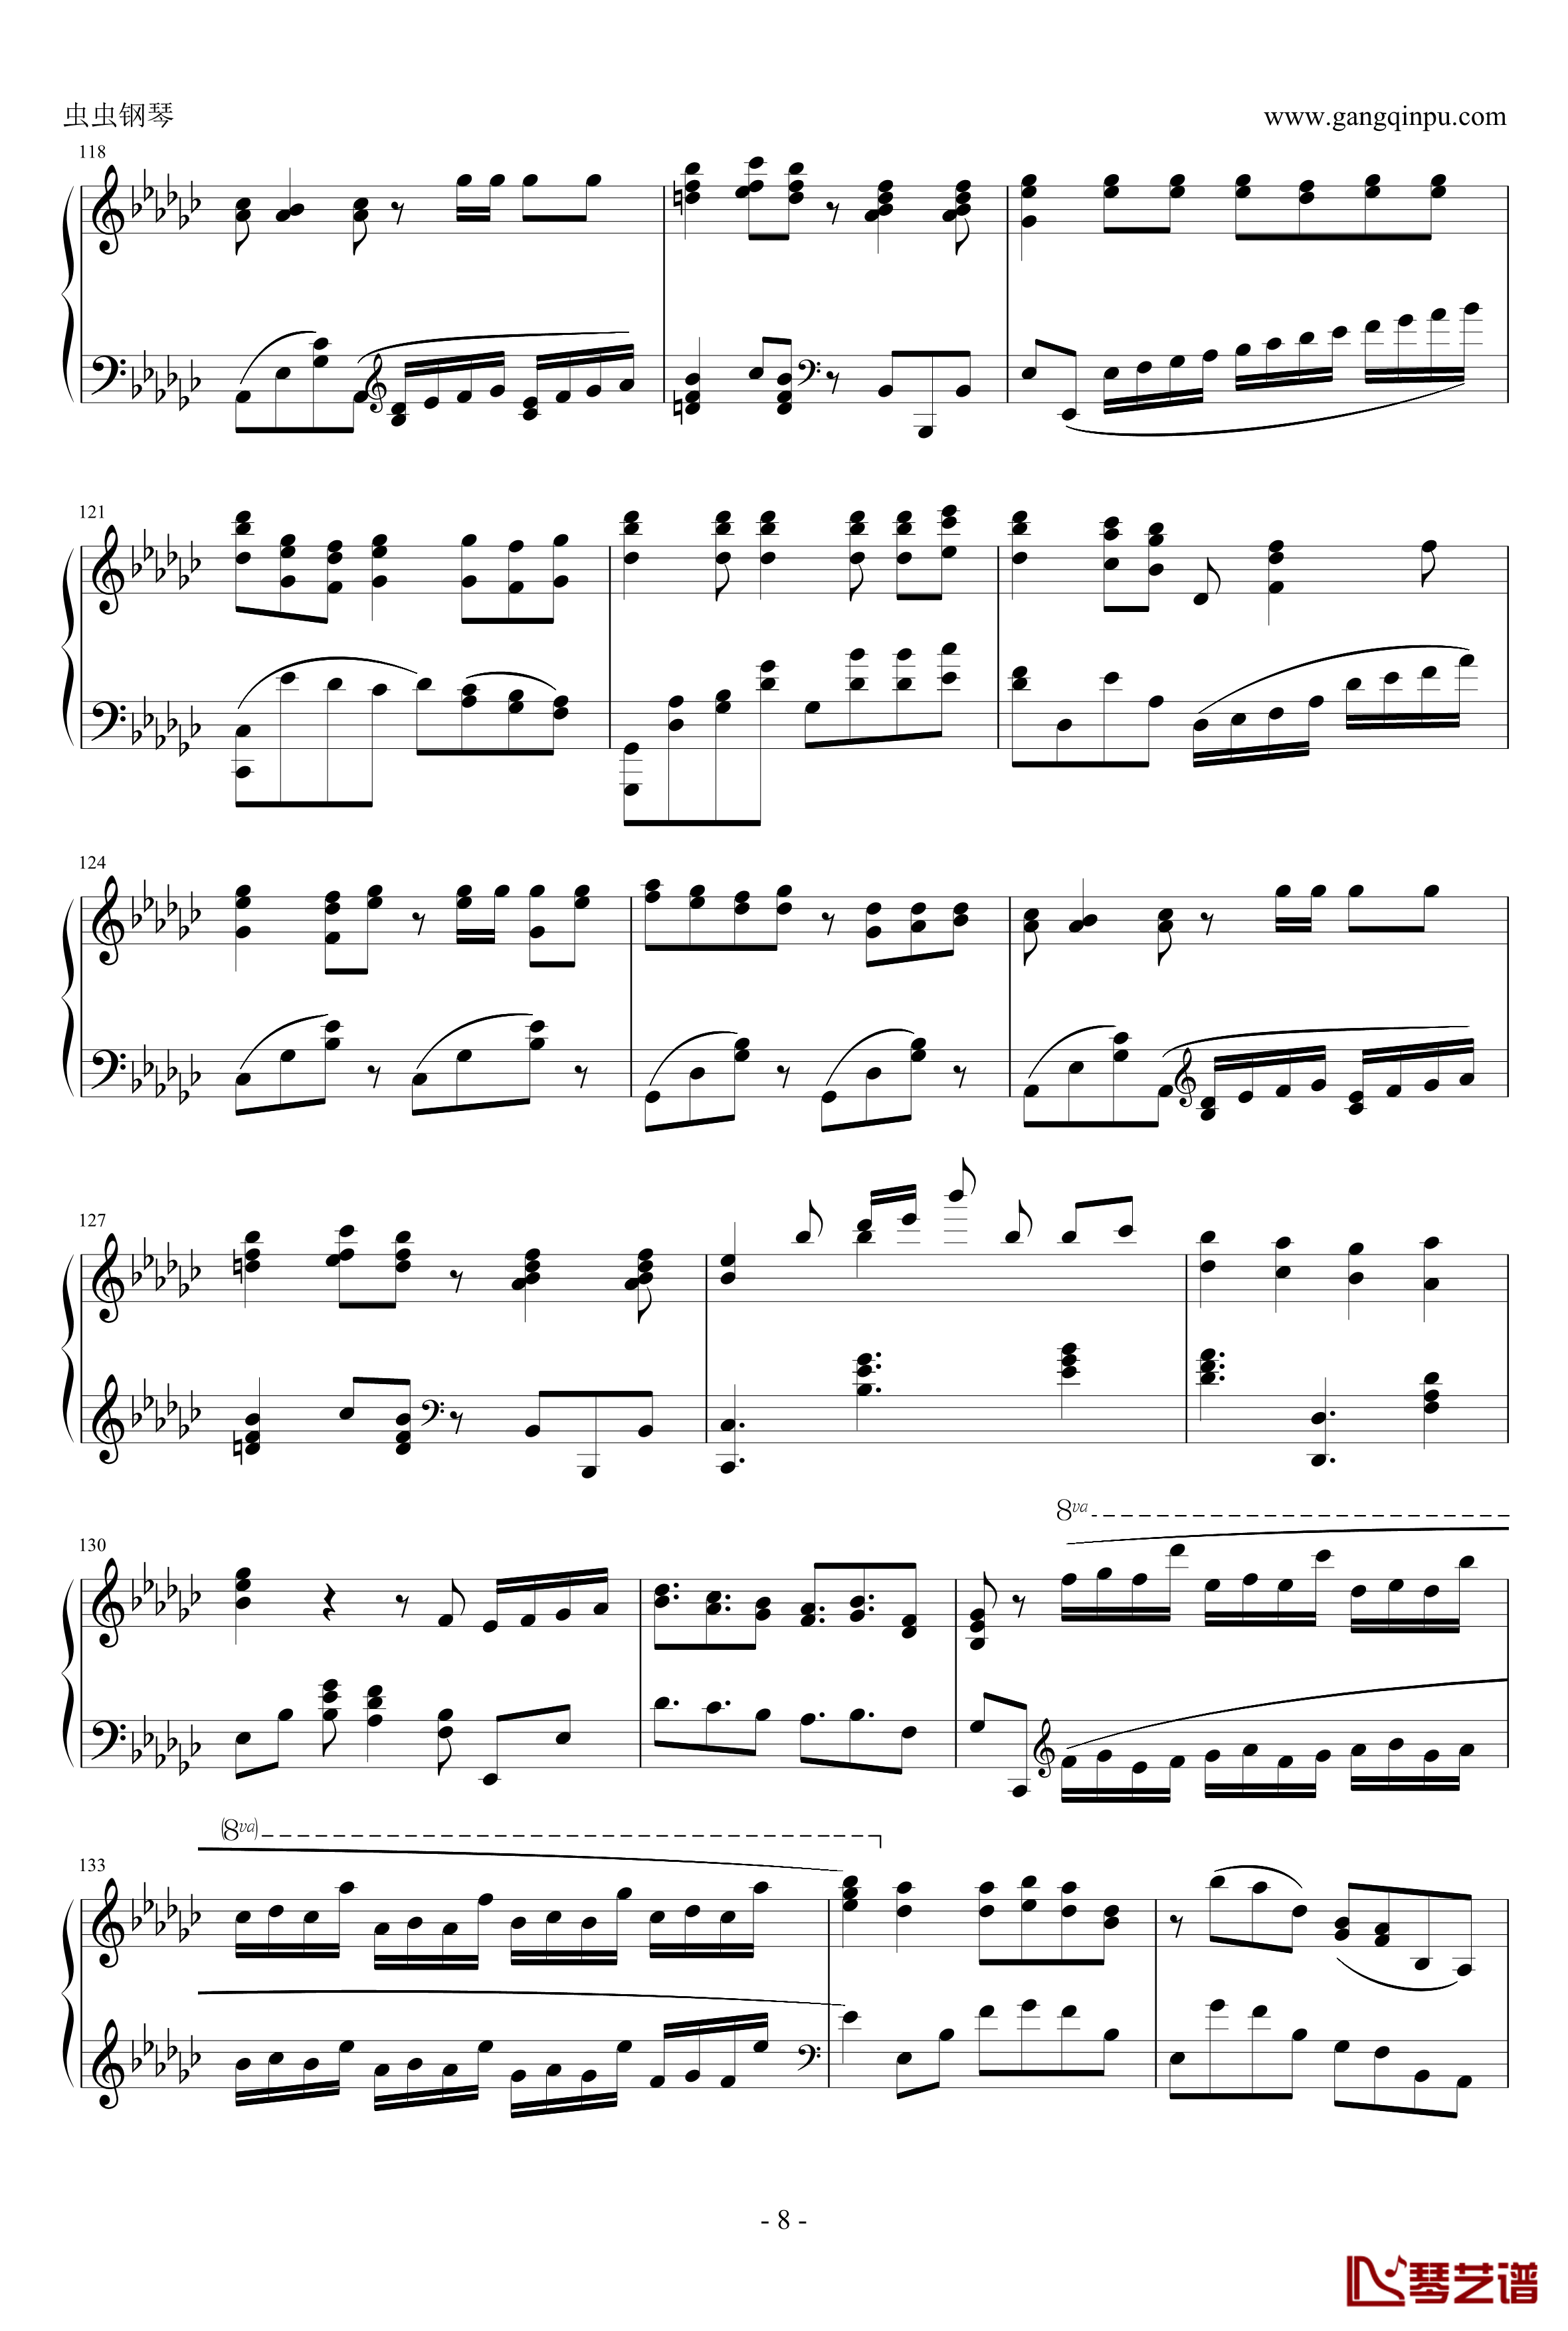 罗密欧与辛德瑞拉钢琴谱-初音ミク-doriko8